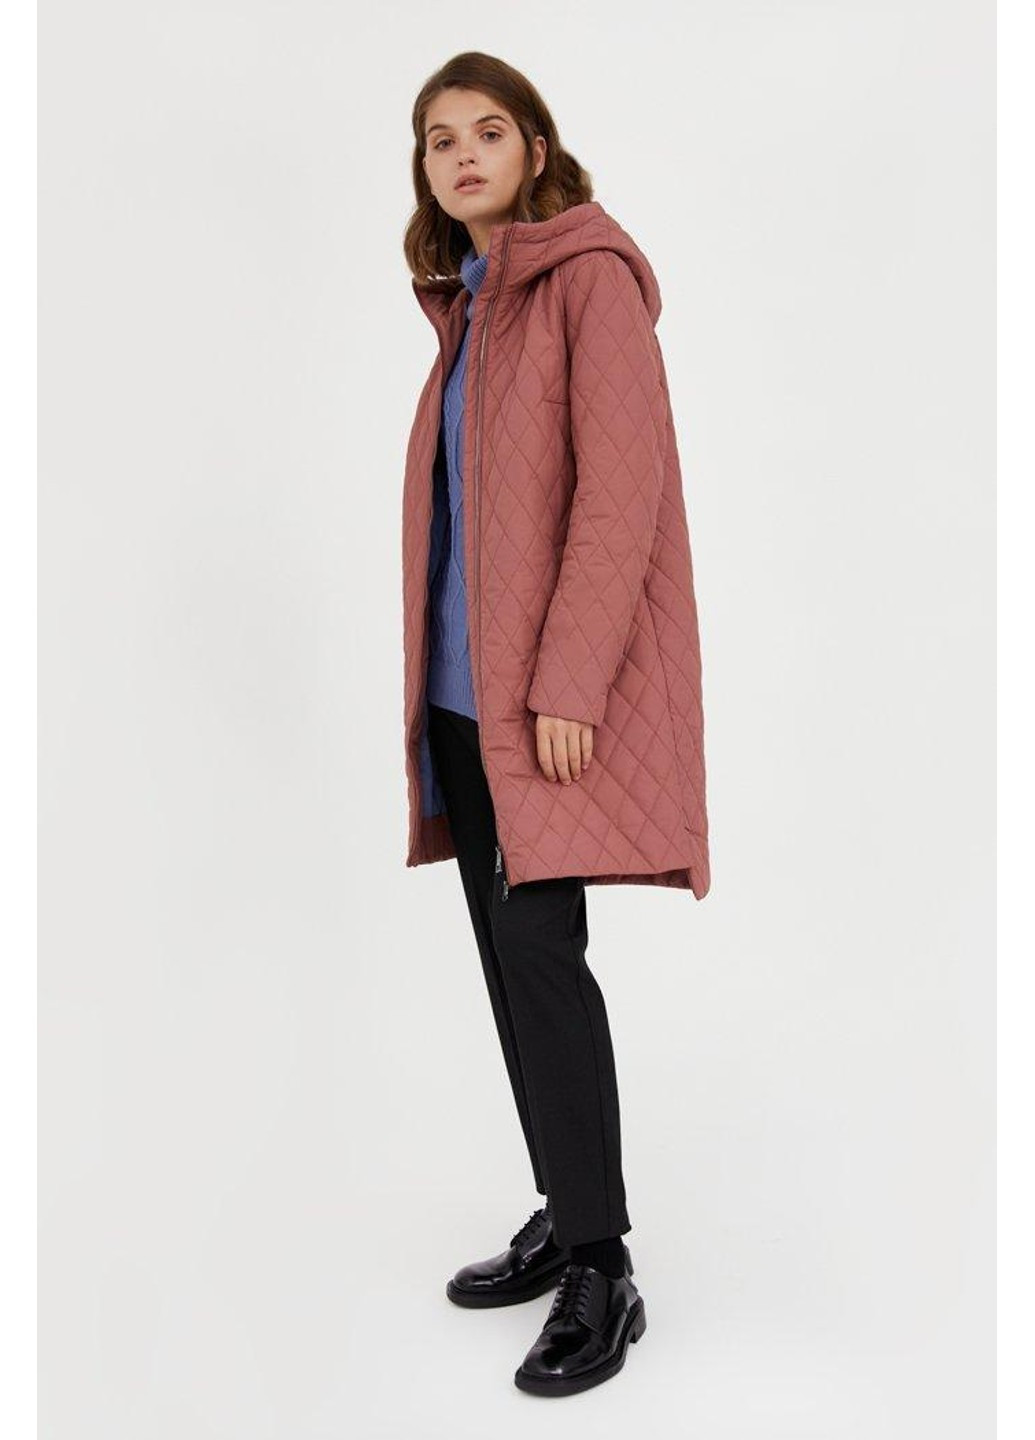 Розовая демисезонная пальто a20-12056-320 Finn Flare